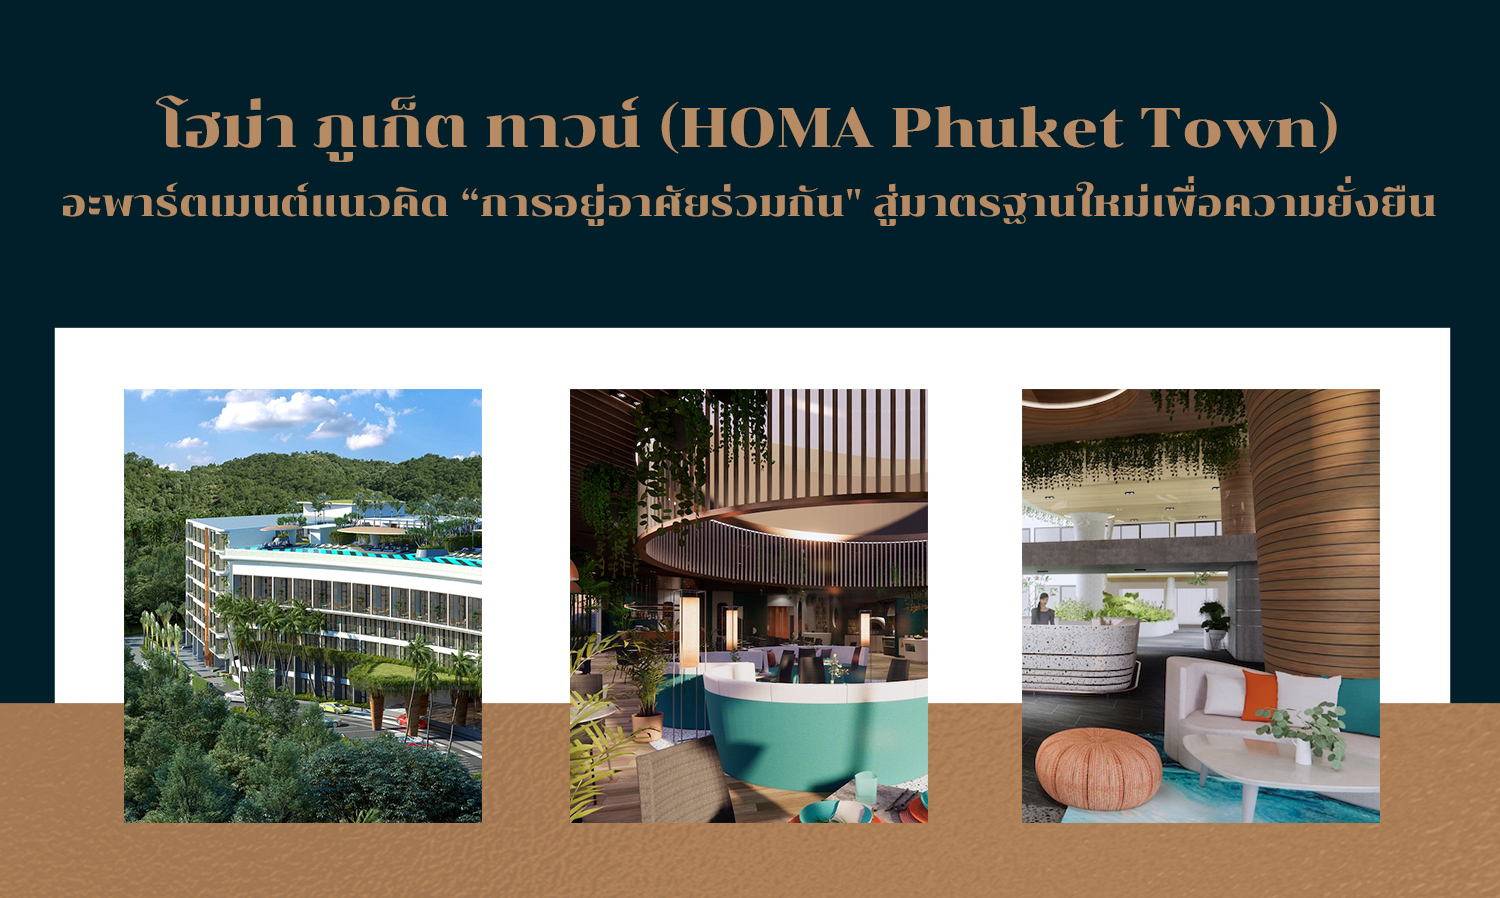 โฮม่า ภูเก็ต ทาวน์ (HOMA Phuket Town) อะพาร์ตเมนต์แนวคิด “การอยู่อาศัยร่วมกัน